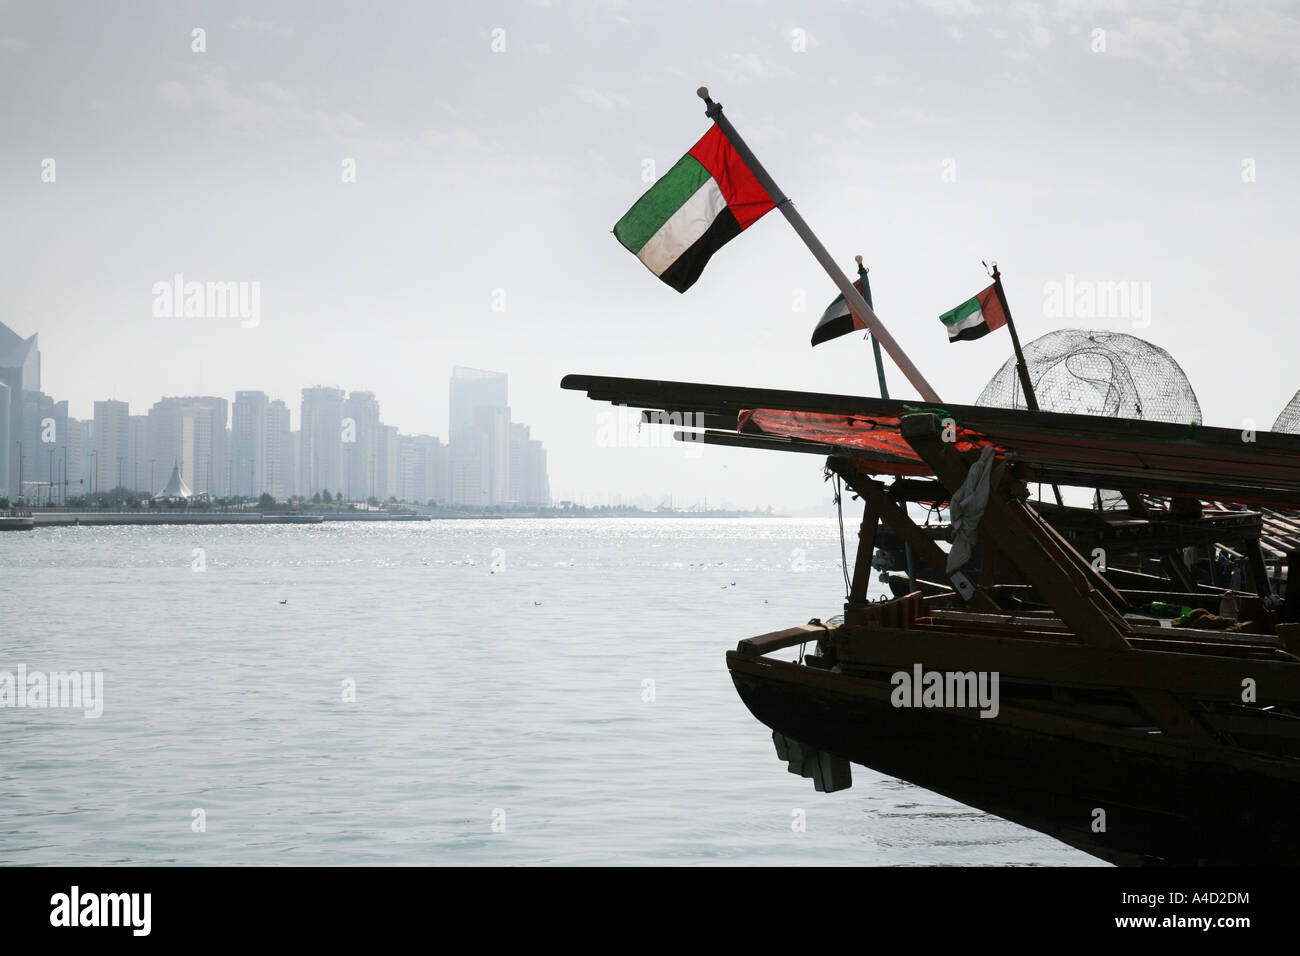 Traditionelle Dhaus und ihre Flaggen im Hafen gegen die moderne Skyline, Abu Dhabi, Vereinigte Arabische Emirate Stockfoto